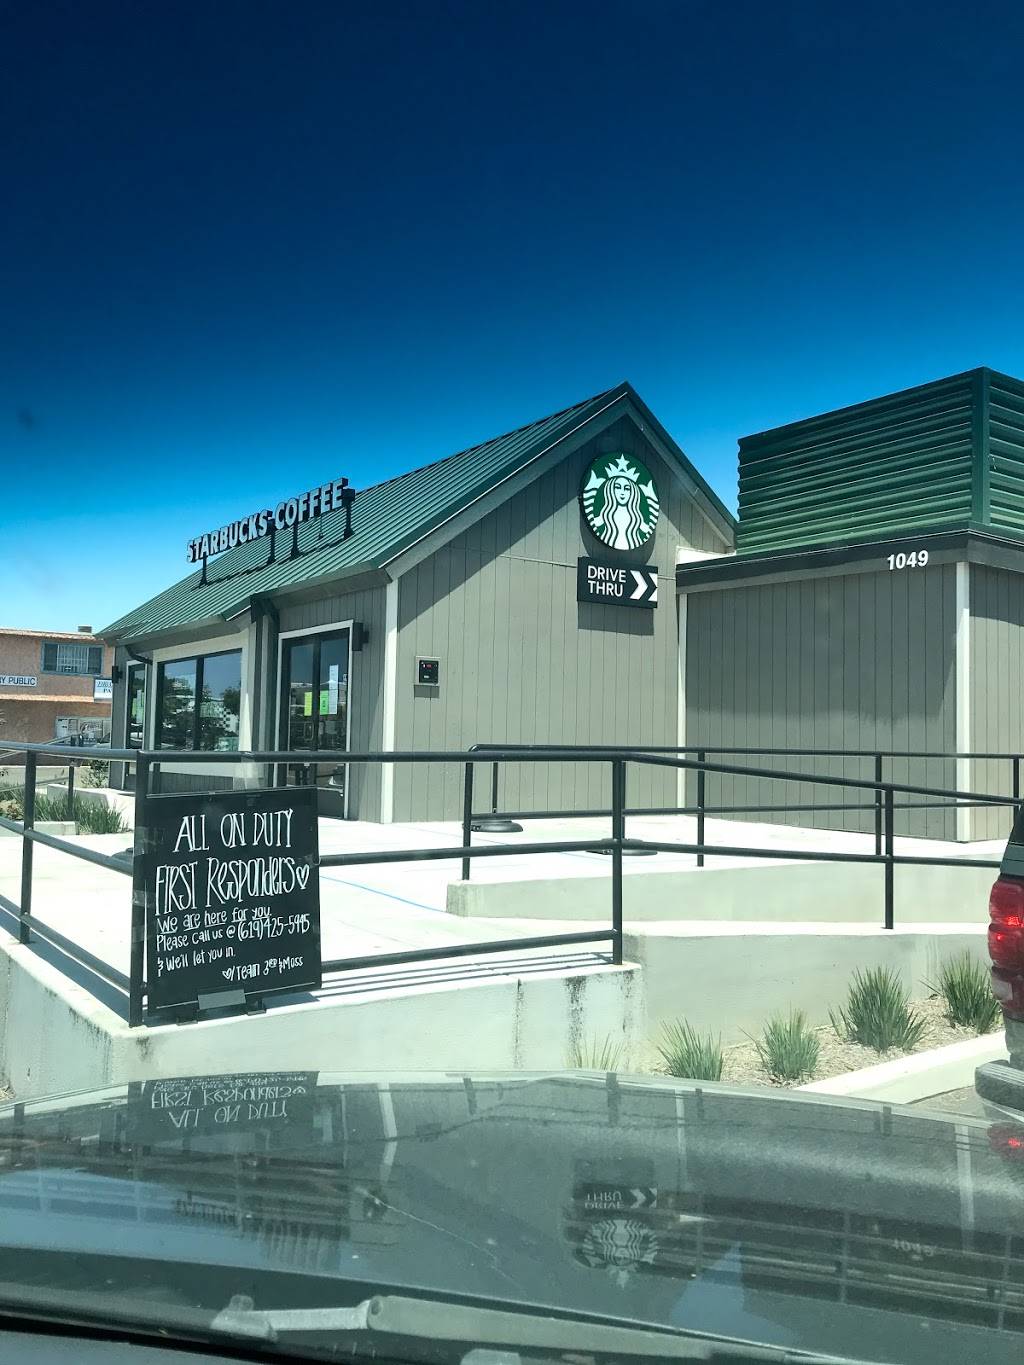 Starbucks jobs in chula vista ca